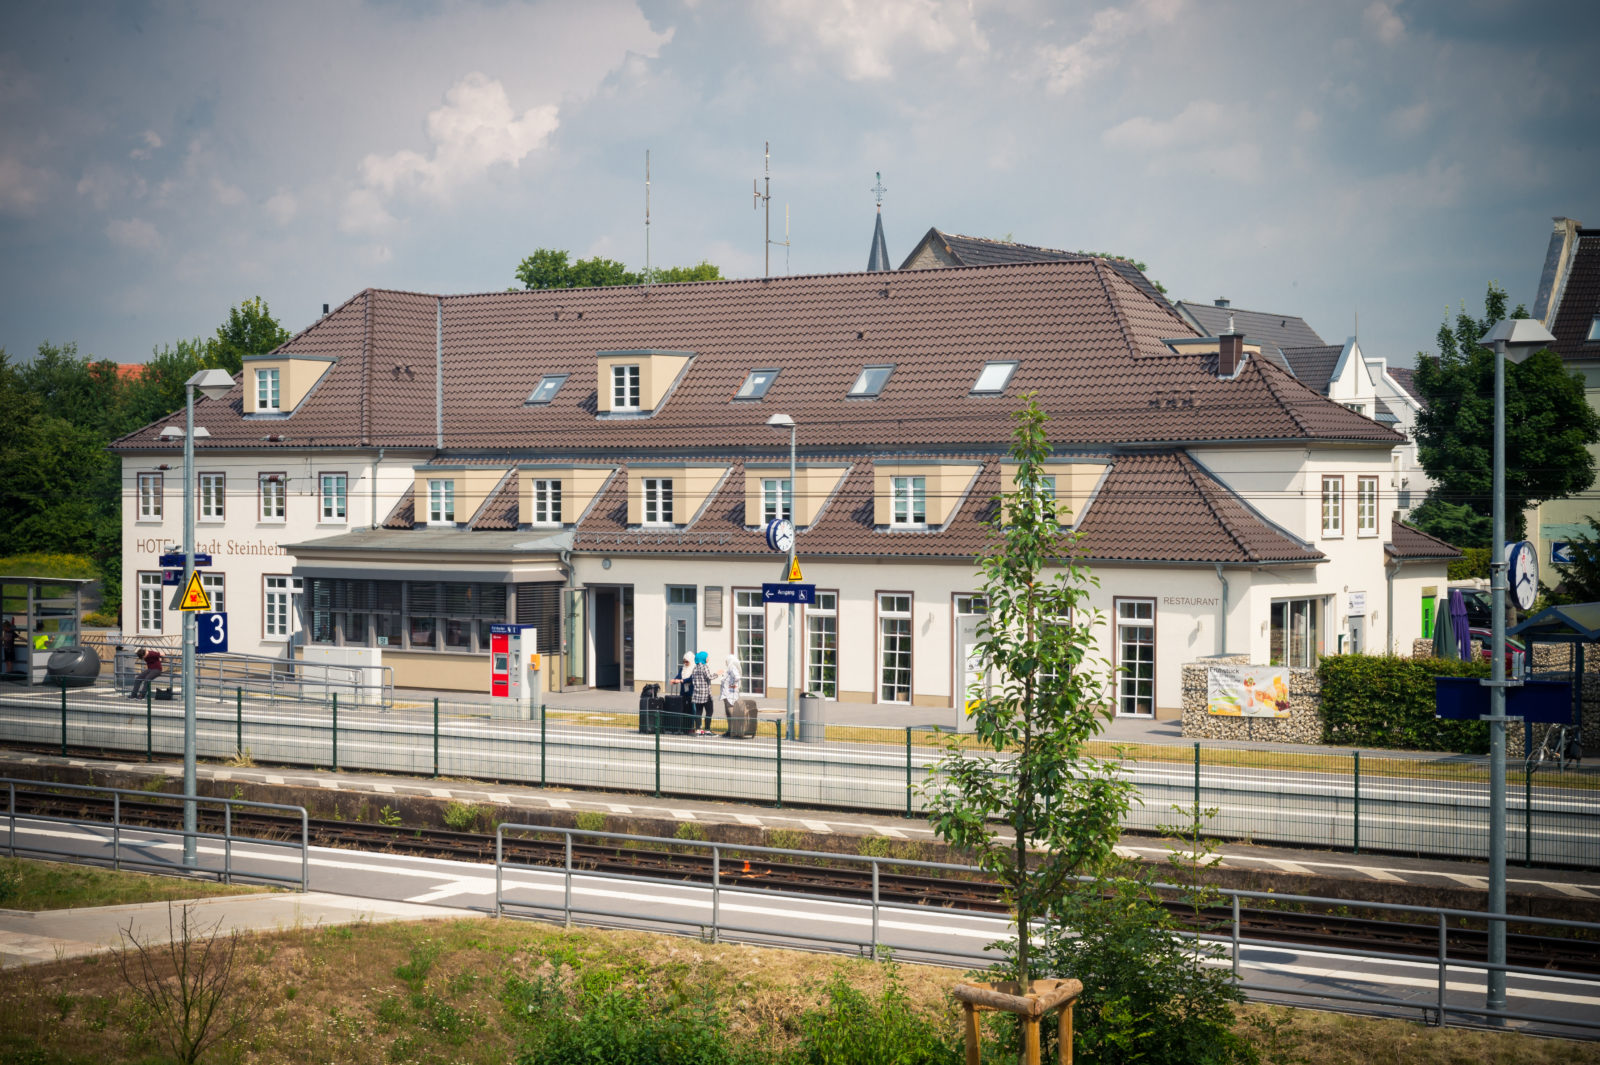 Bahnhof Steinheim (Westfalen) - Bahnhof des Jahres 2016